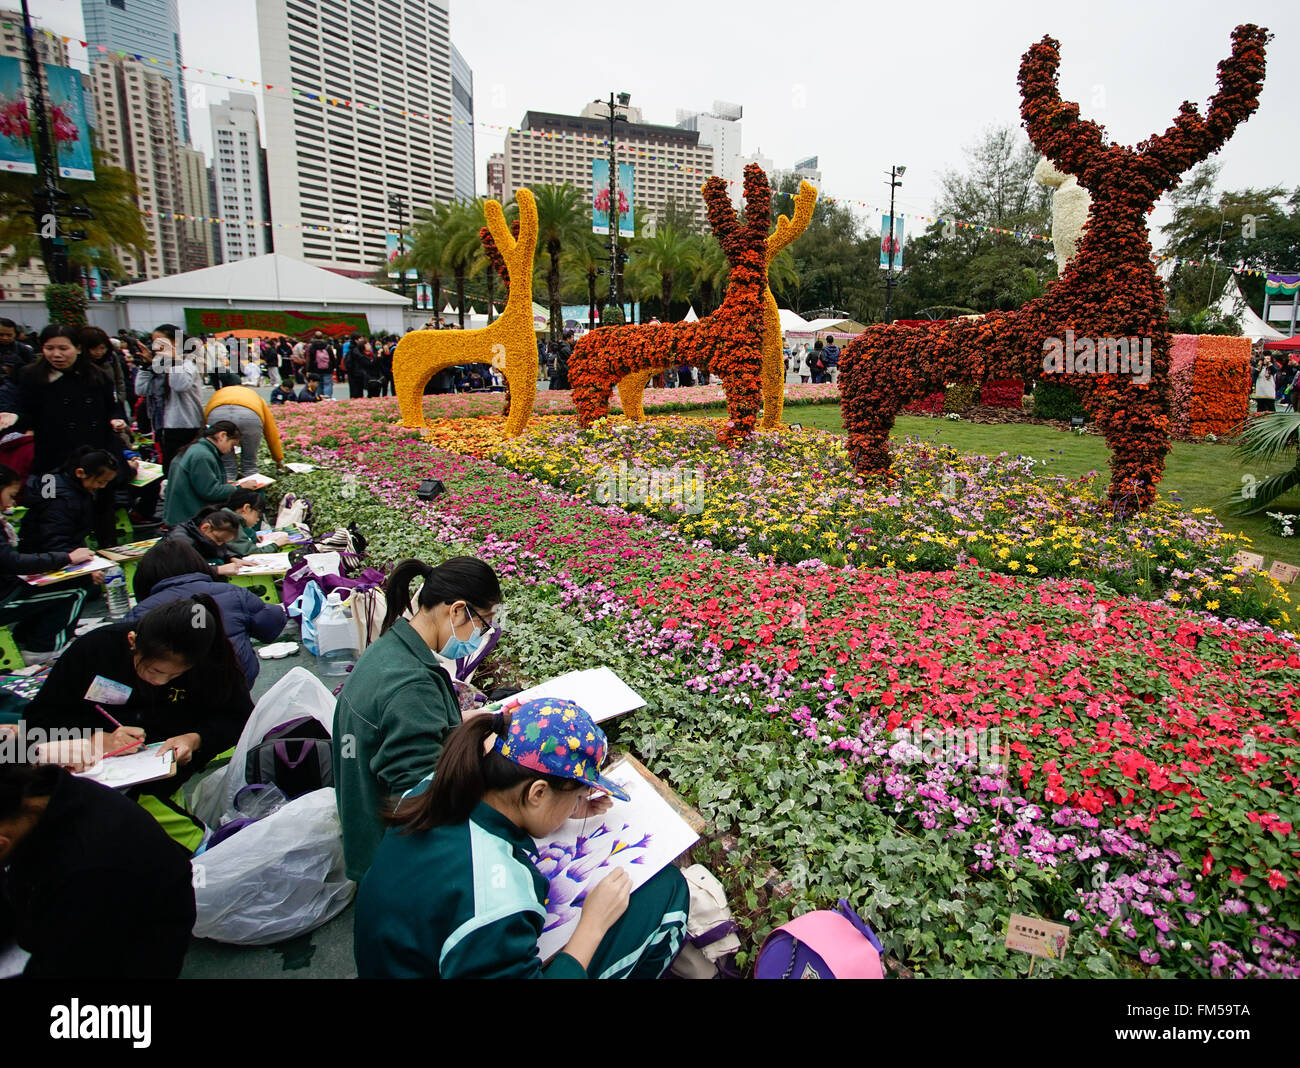 Hong Kong, China. 11 Mar, 2016. Los visitantes dibujar imágenes de flores durante la Exhibición de Flores de Hong Kong en el parque Victoria de Hong Kong, sur de China, 11 de marzo de 2016. © Ng Wing Kin/Xinhua/Alamy Live News Foto de stock